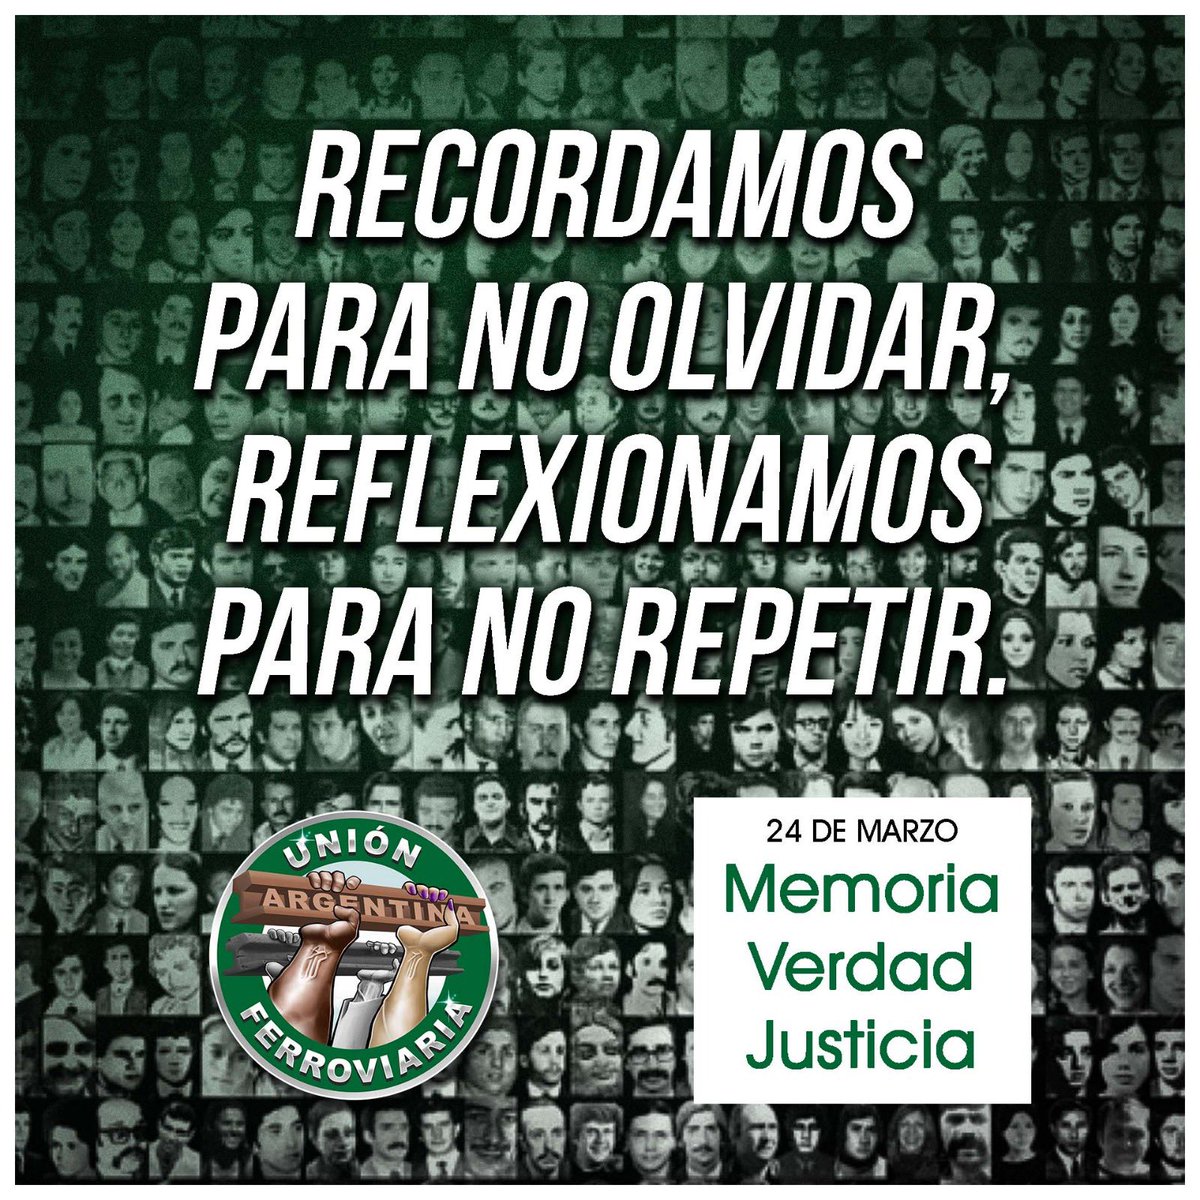 24 de marzo Día de la Memoria por la Verdad y la Justicia. 📌RECORDAMOS PARA NO OLVIDAR, REFLEXIONAMOS PARA NO REPETIR.